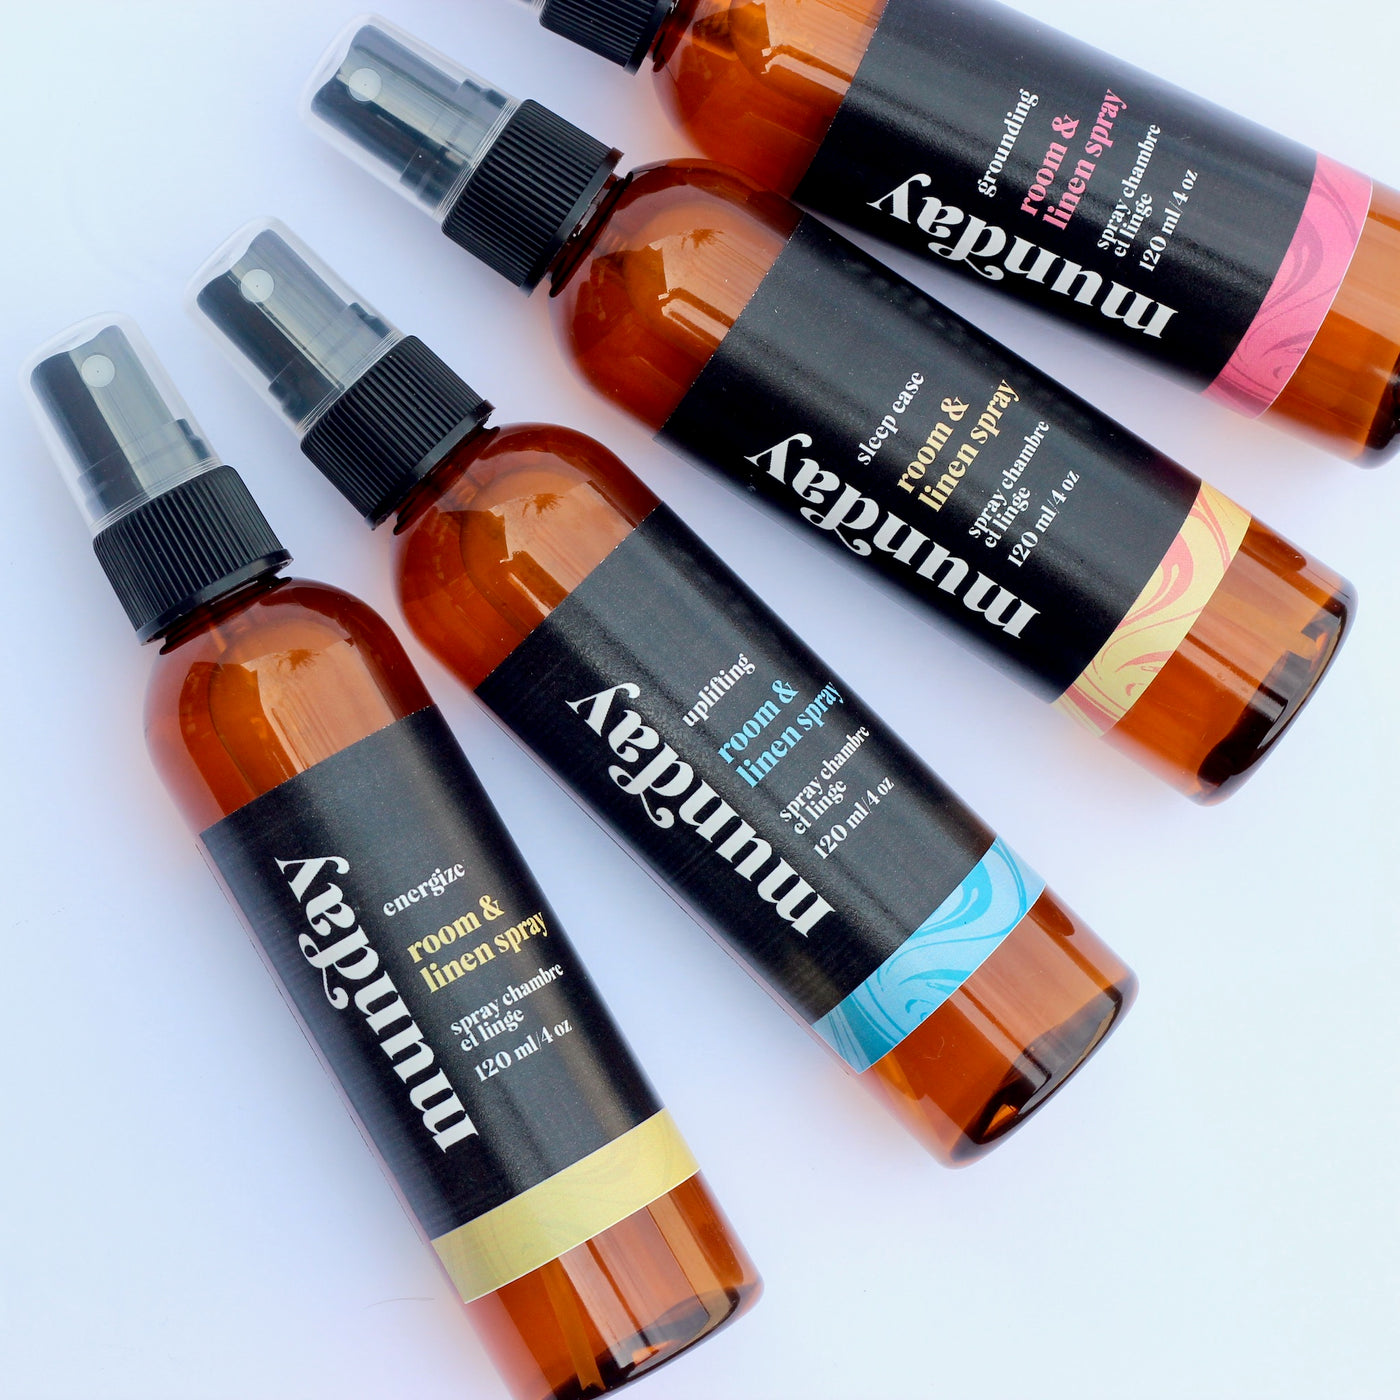 Room & Linen Sprays with essential oils designed for wellness